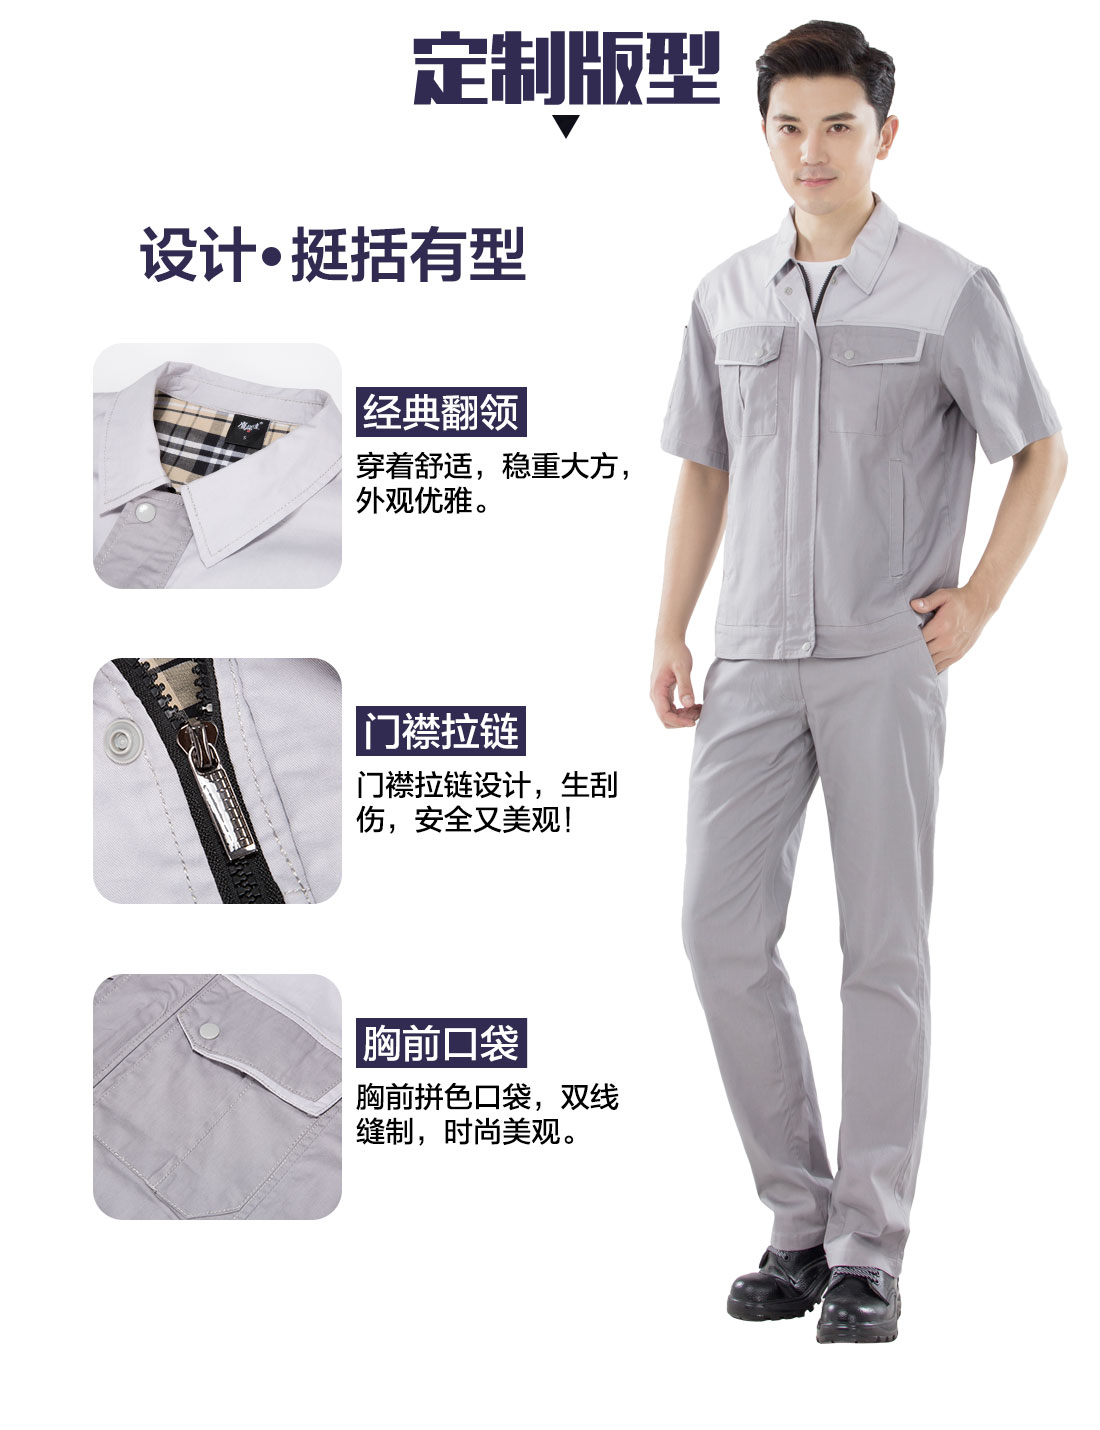 张家港工作服的设计版型